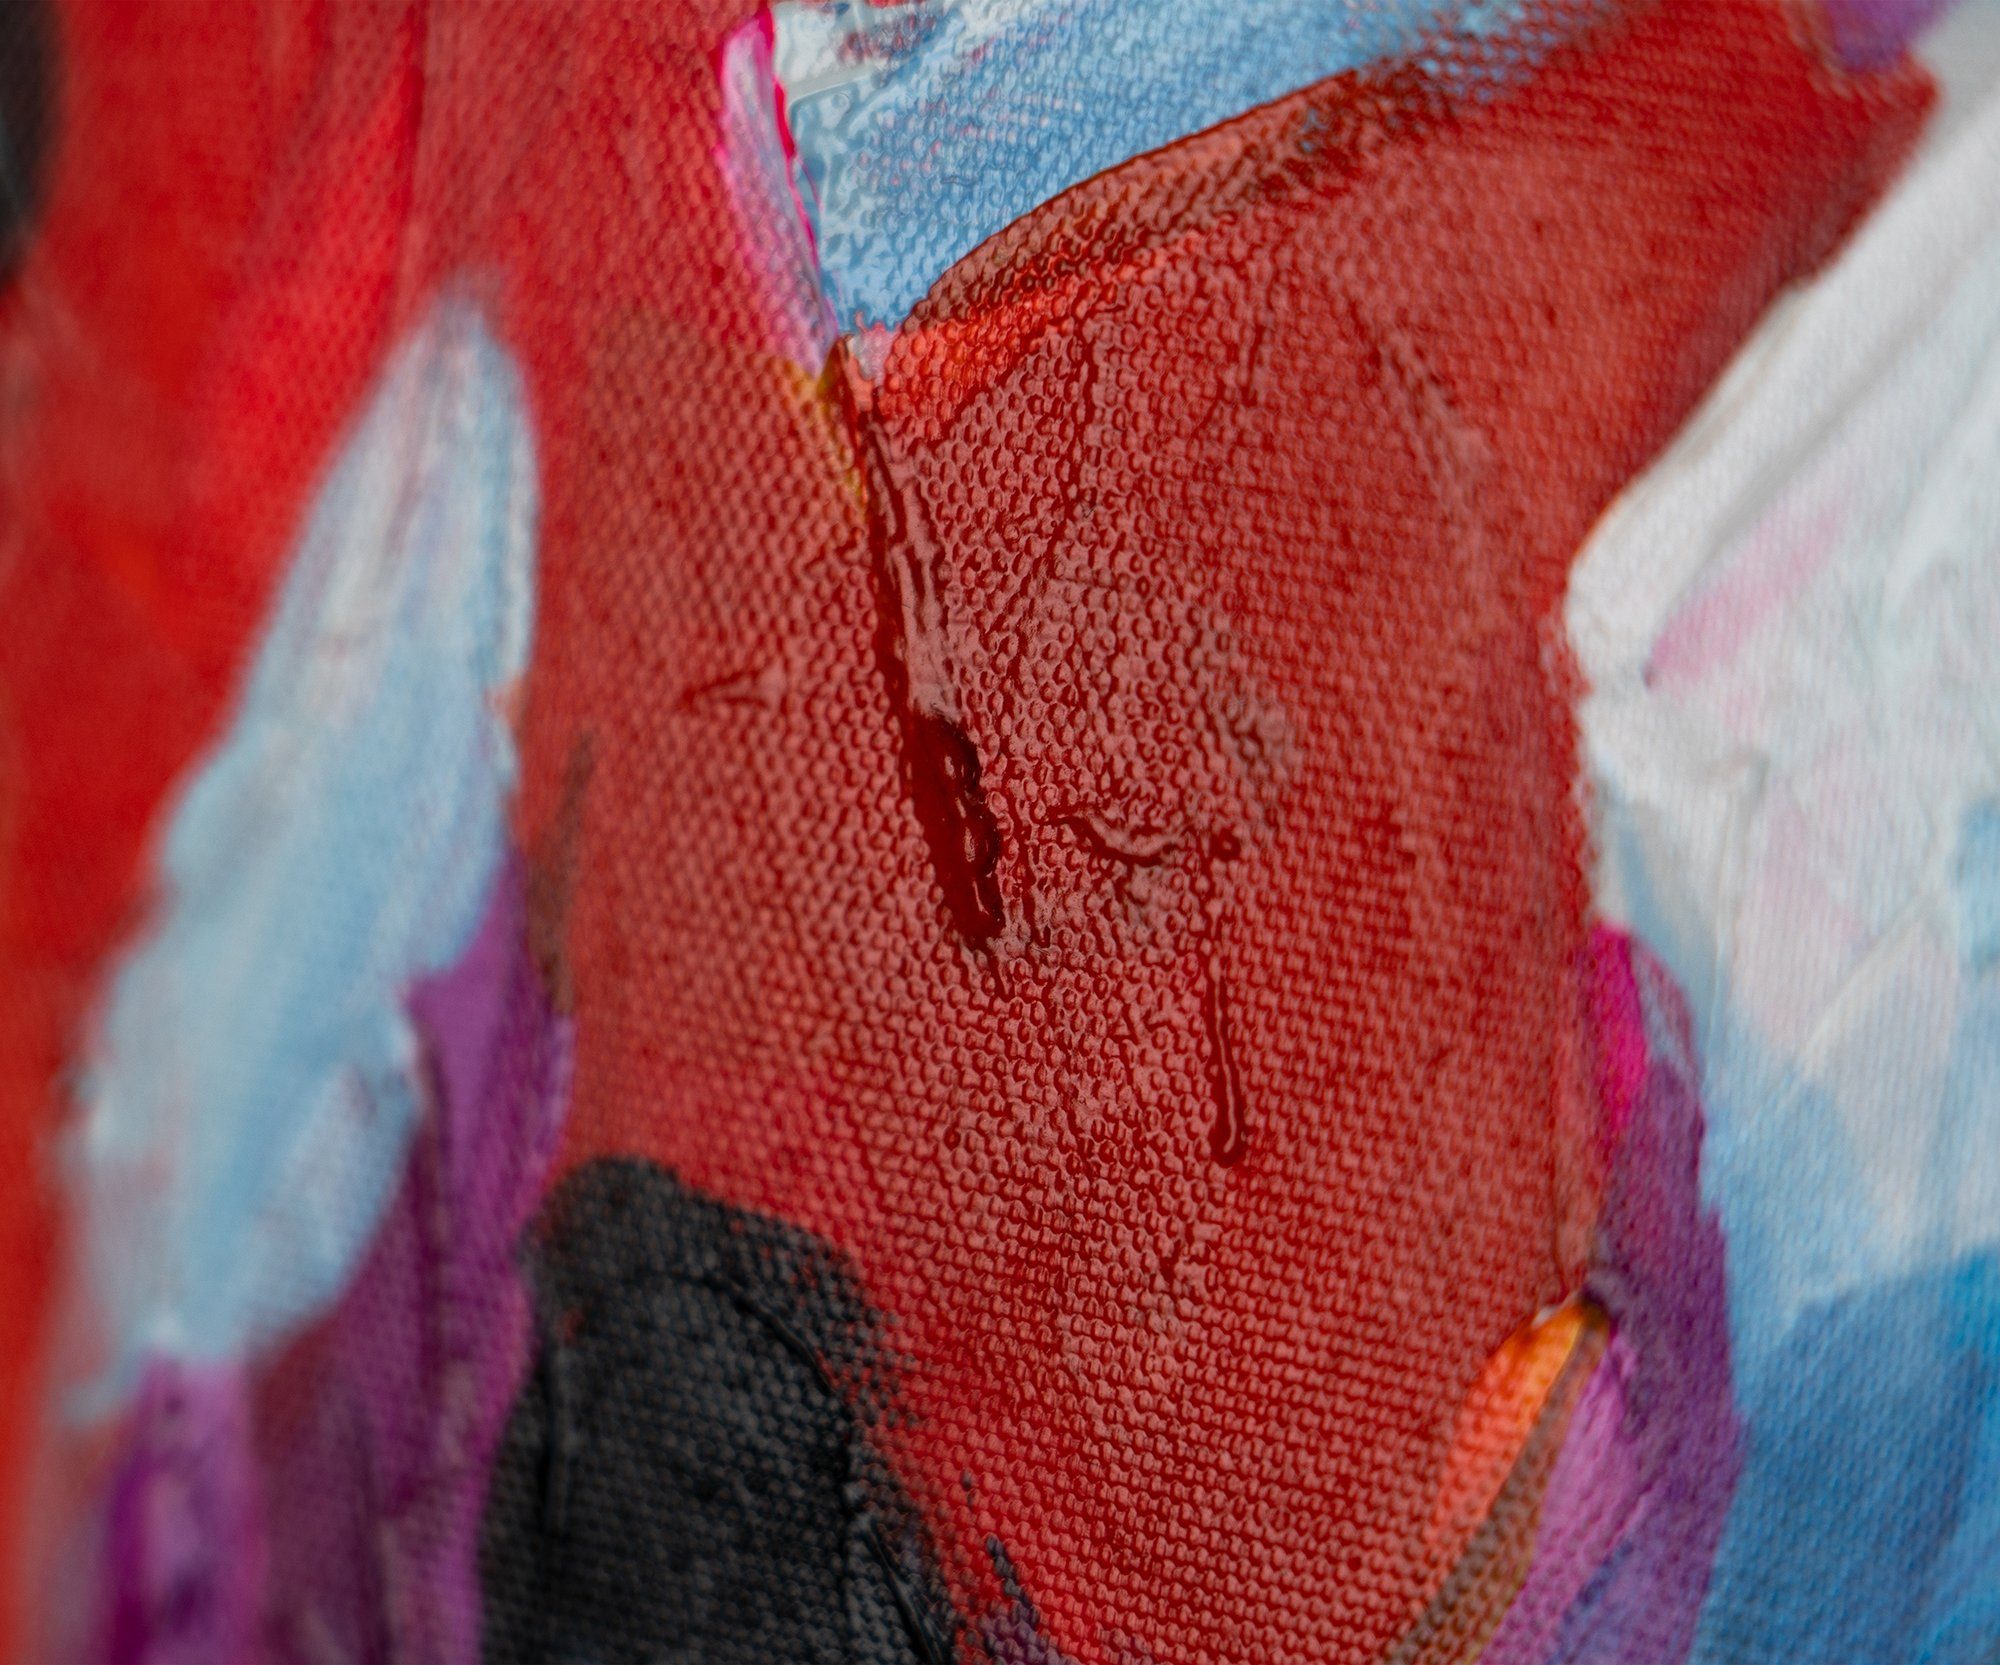 Menschen Rot Mit YS-Art der Gemälde Liebe, Farben Rahmen in